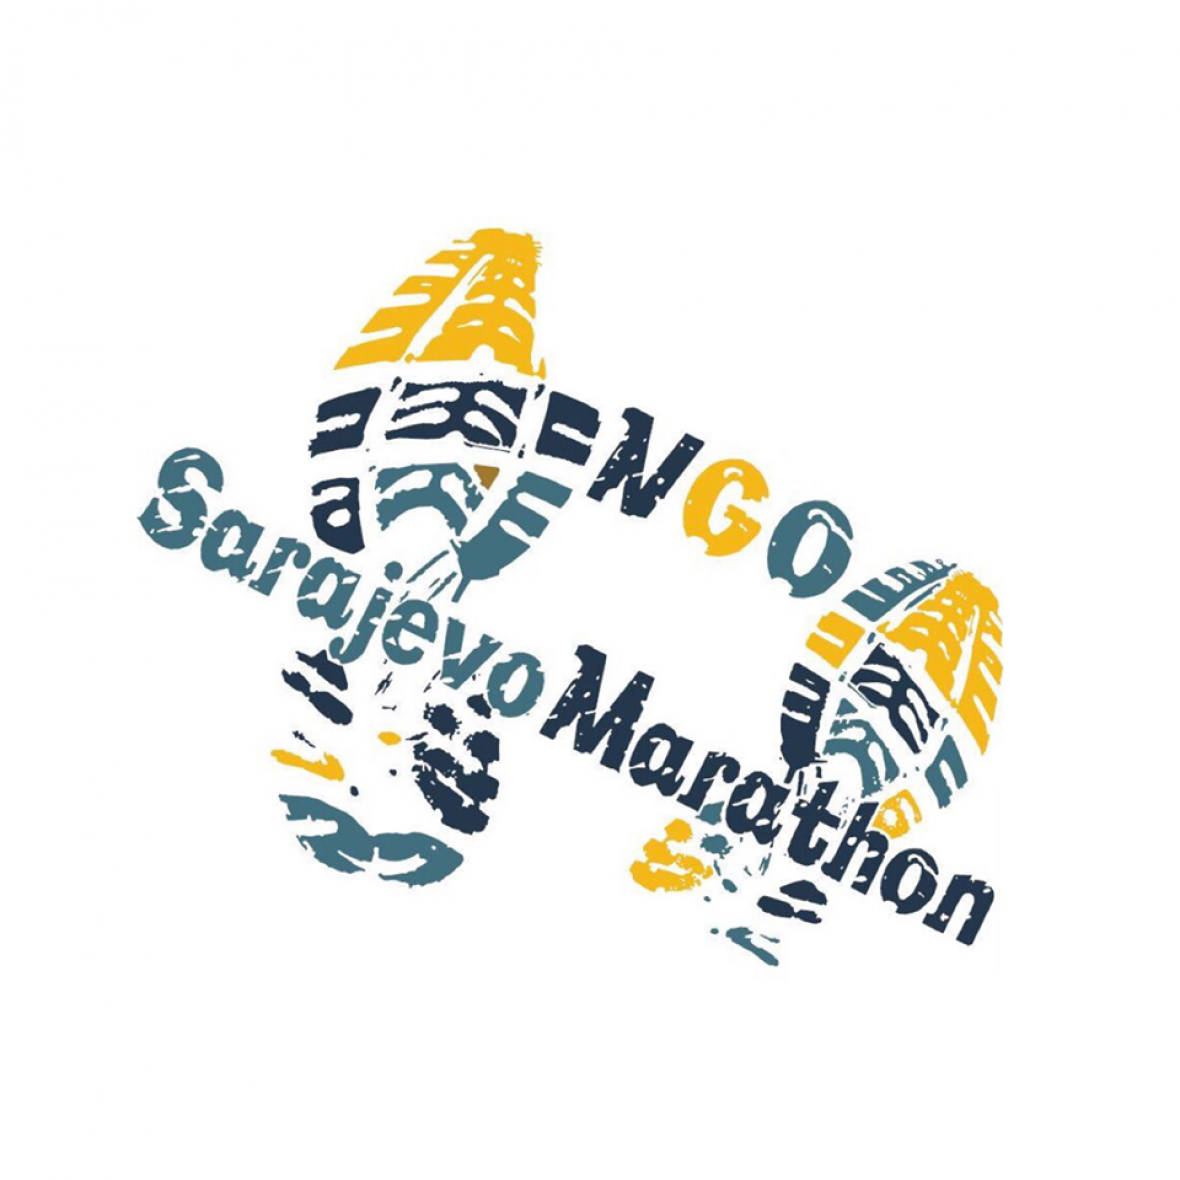 NGO Maraton - undefined